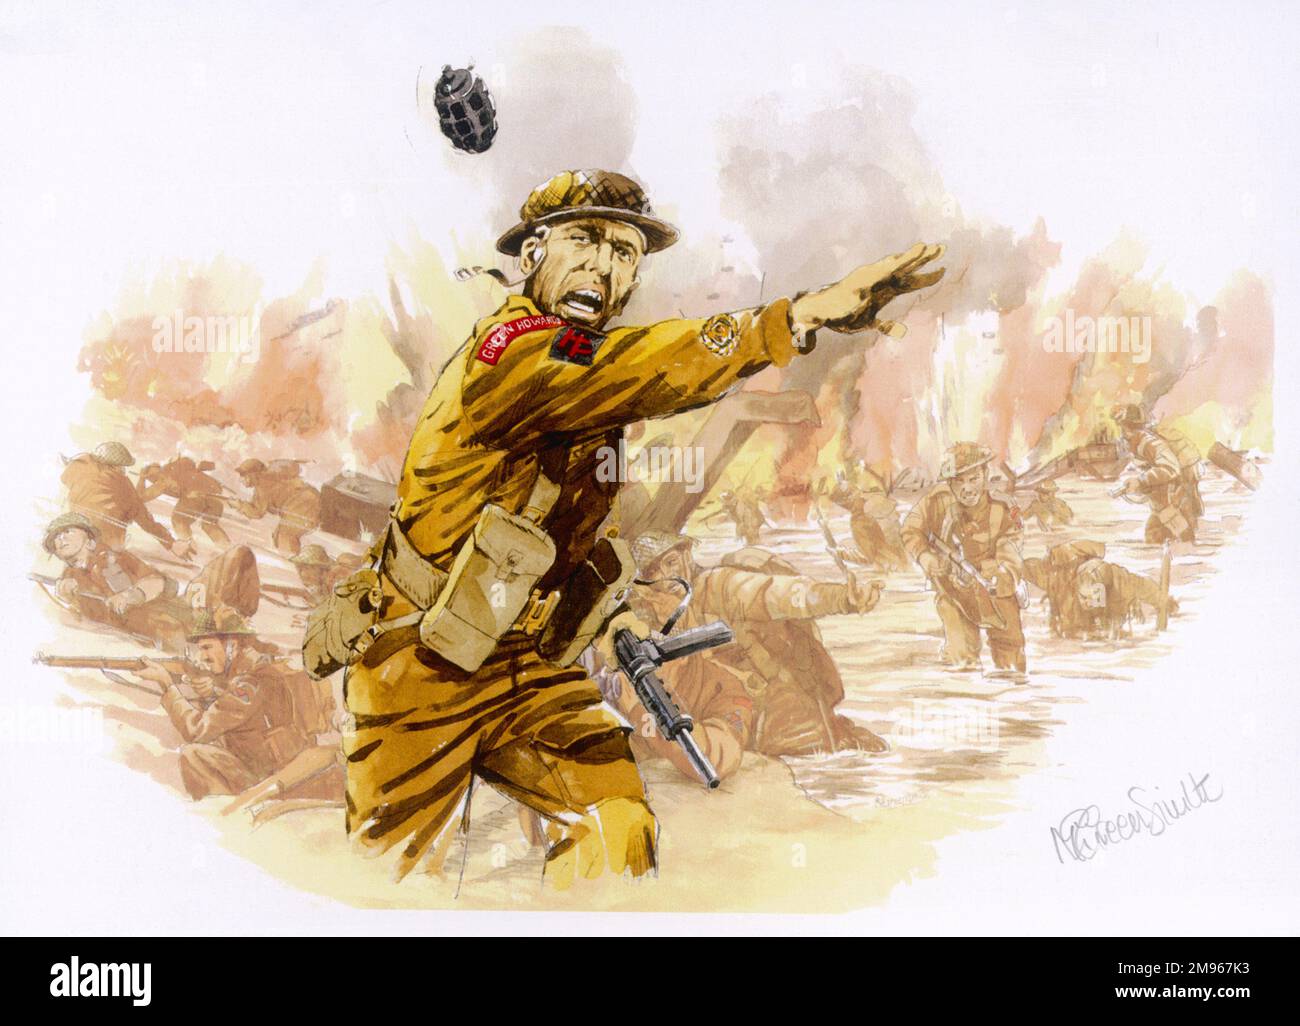 Assalto di Grenade. Un trooper britannico scagliò una granata a mano verso una posizione tedesca durante l'assalto alle spiagge della Normandia il 6th giugno 1944 - D-Day - la seconda fase dell'operazione Overlord. Foto Stock